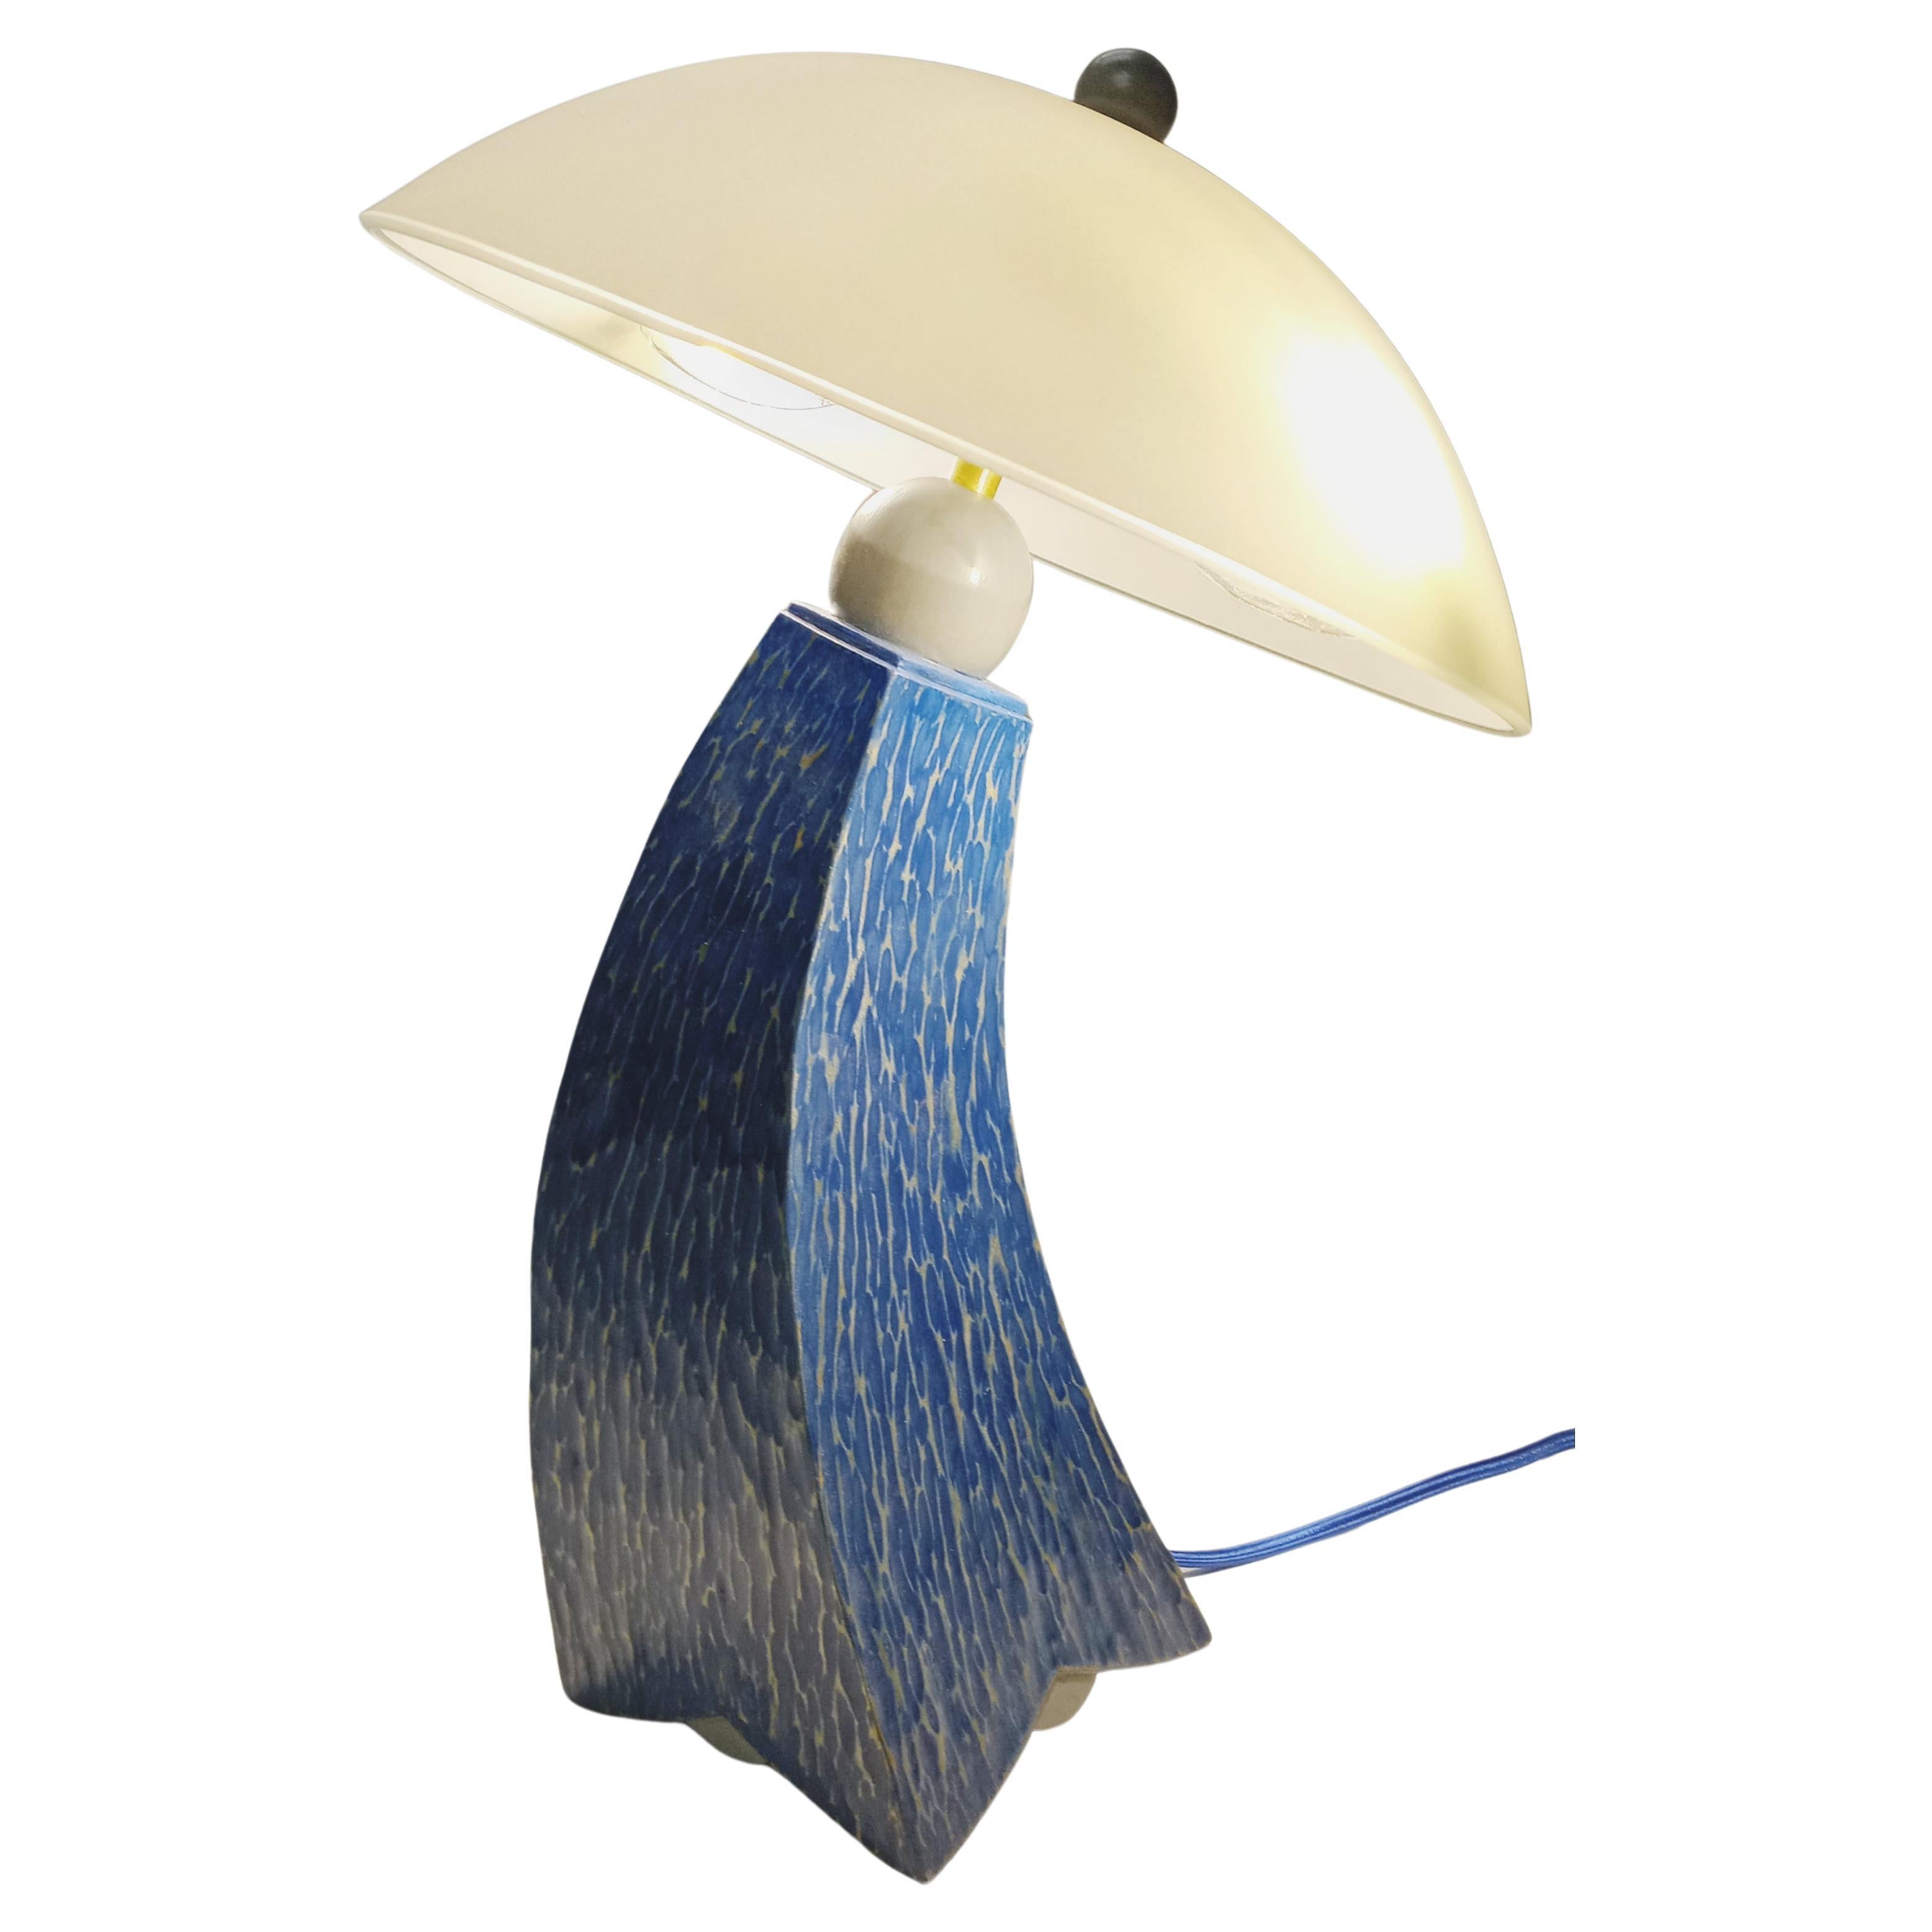 Tischlampe min blau und grau strukturiert Milchfarben jazz inspiriertes Design auf Lager